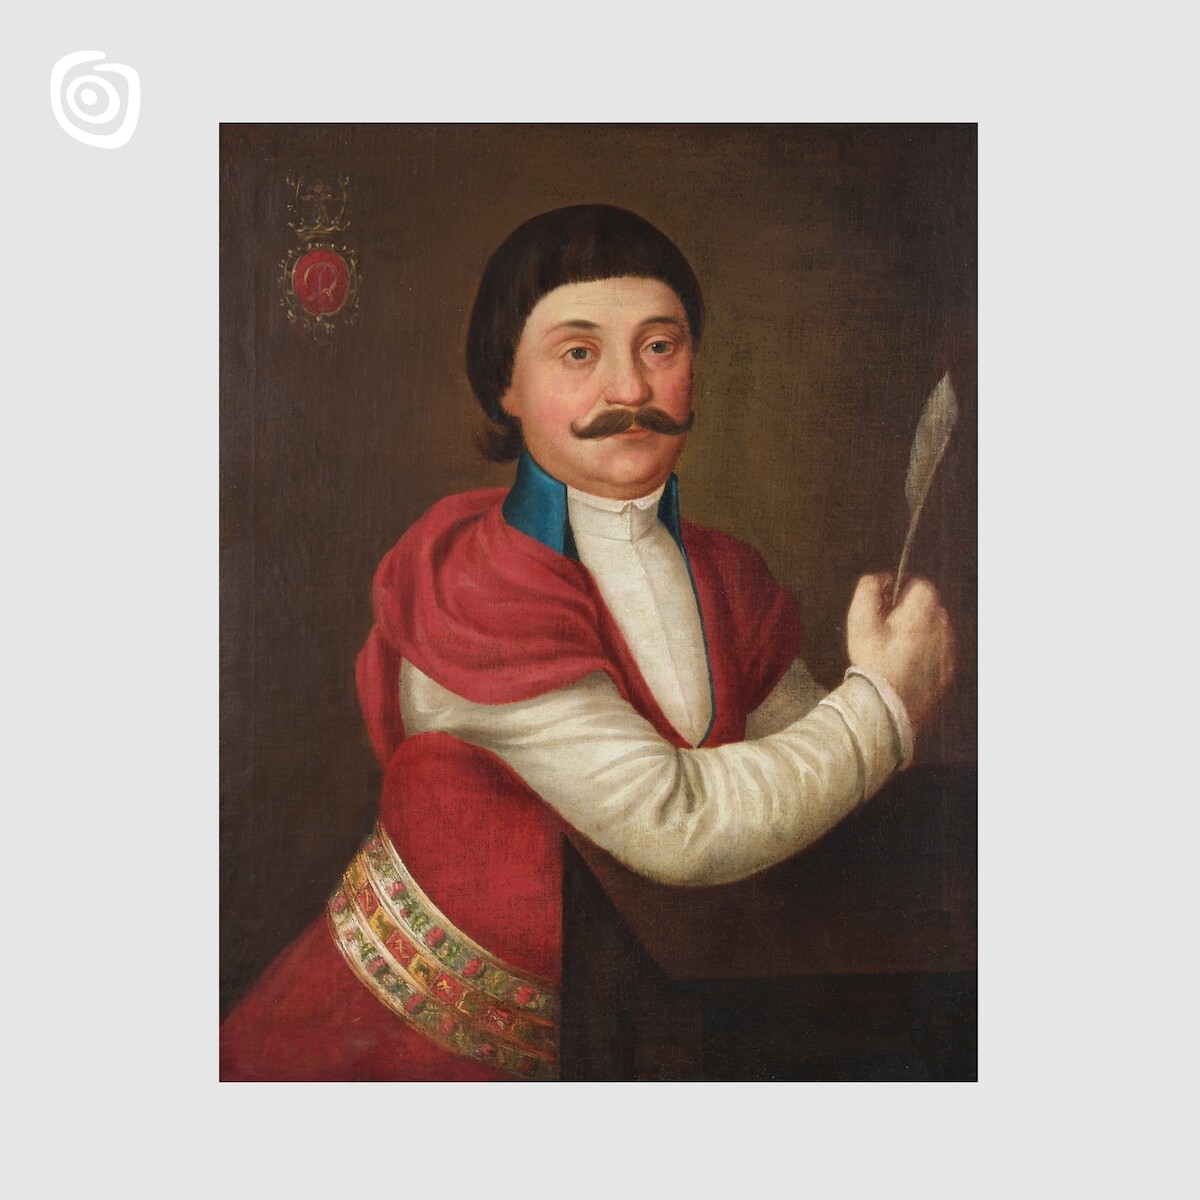 Portret Stanisława Chełmickiego, miejscowość nieznana, 1. poł. XIX w.